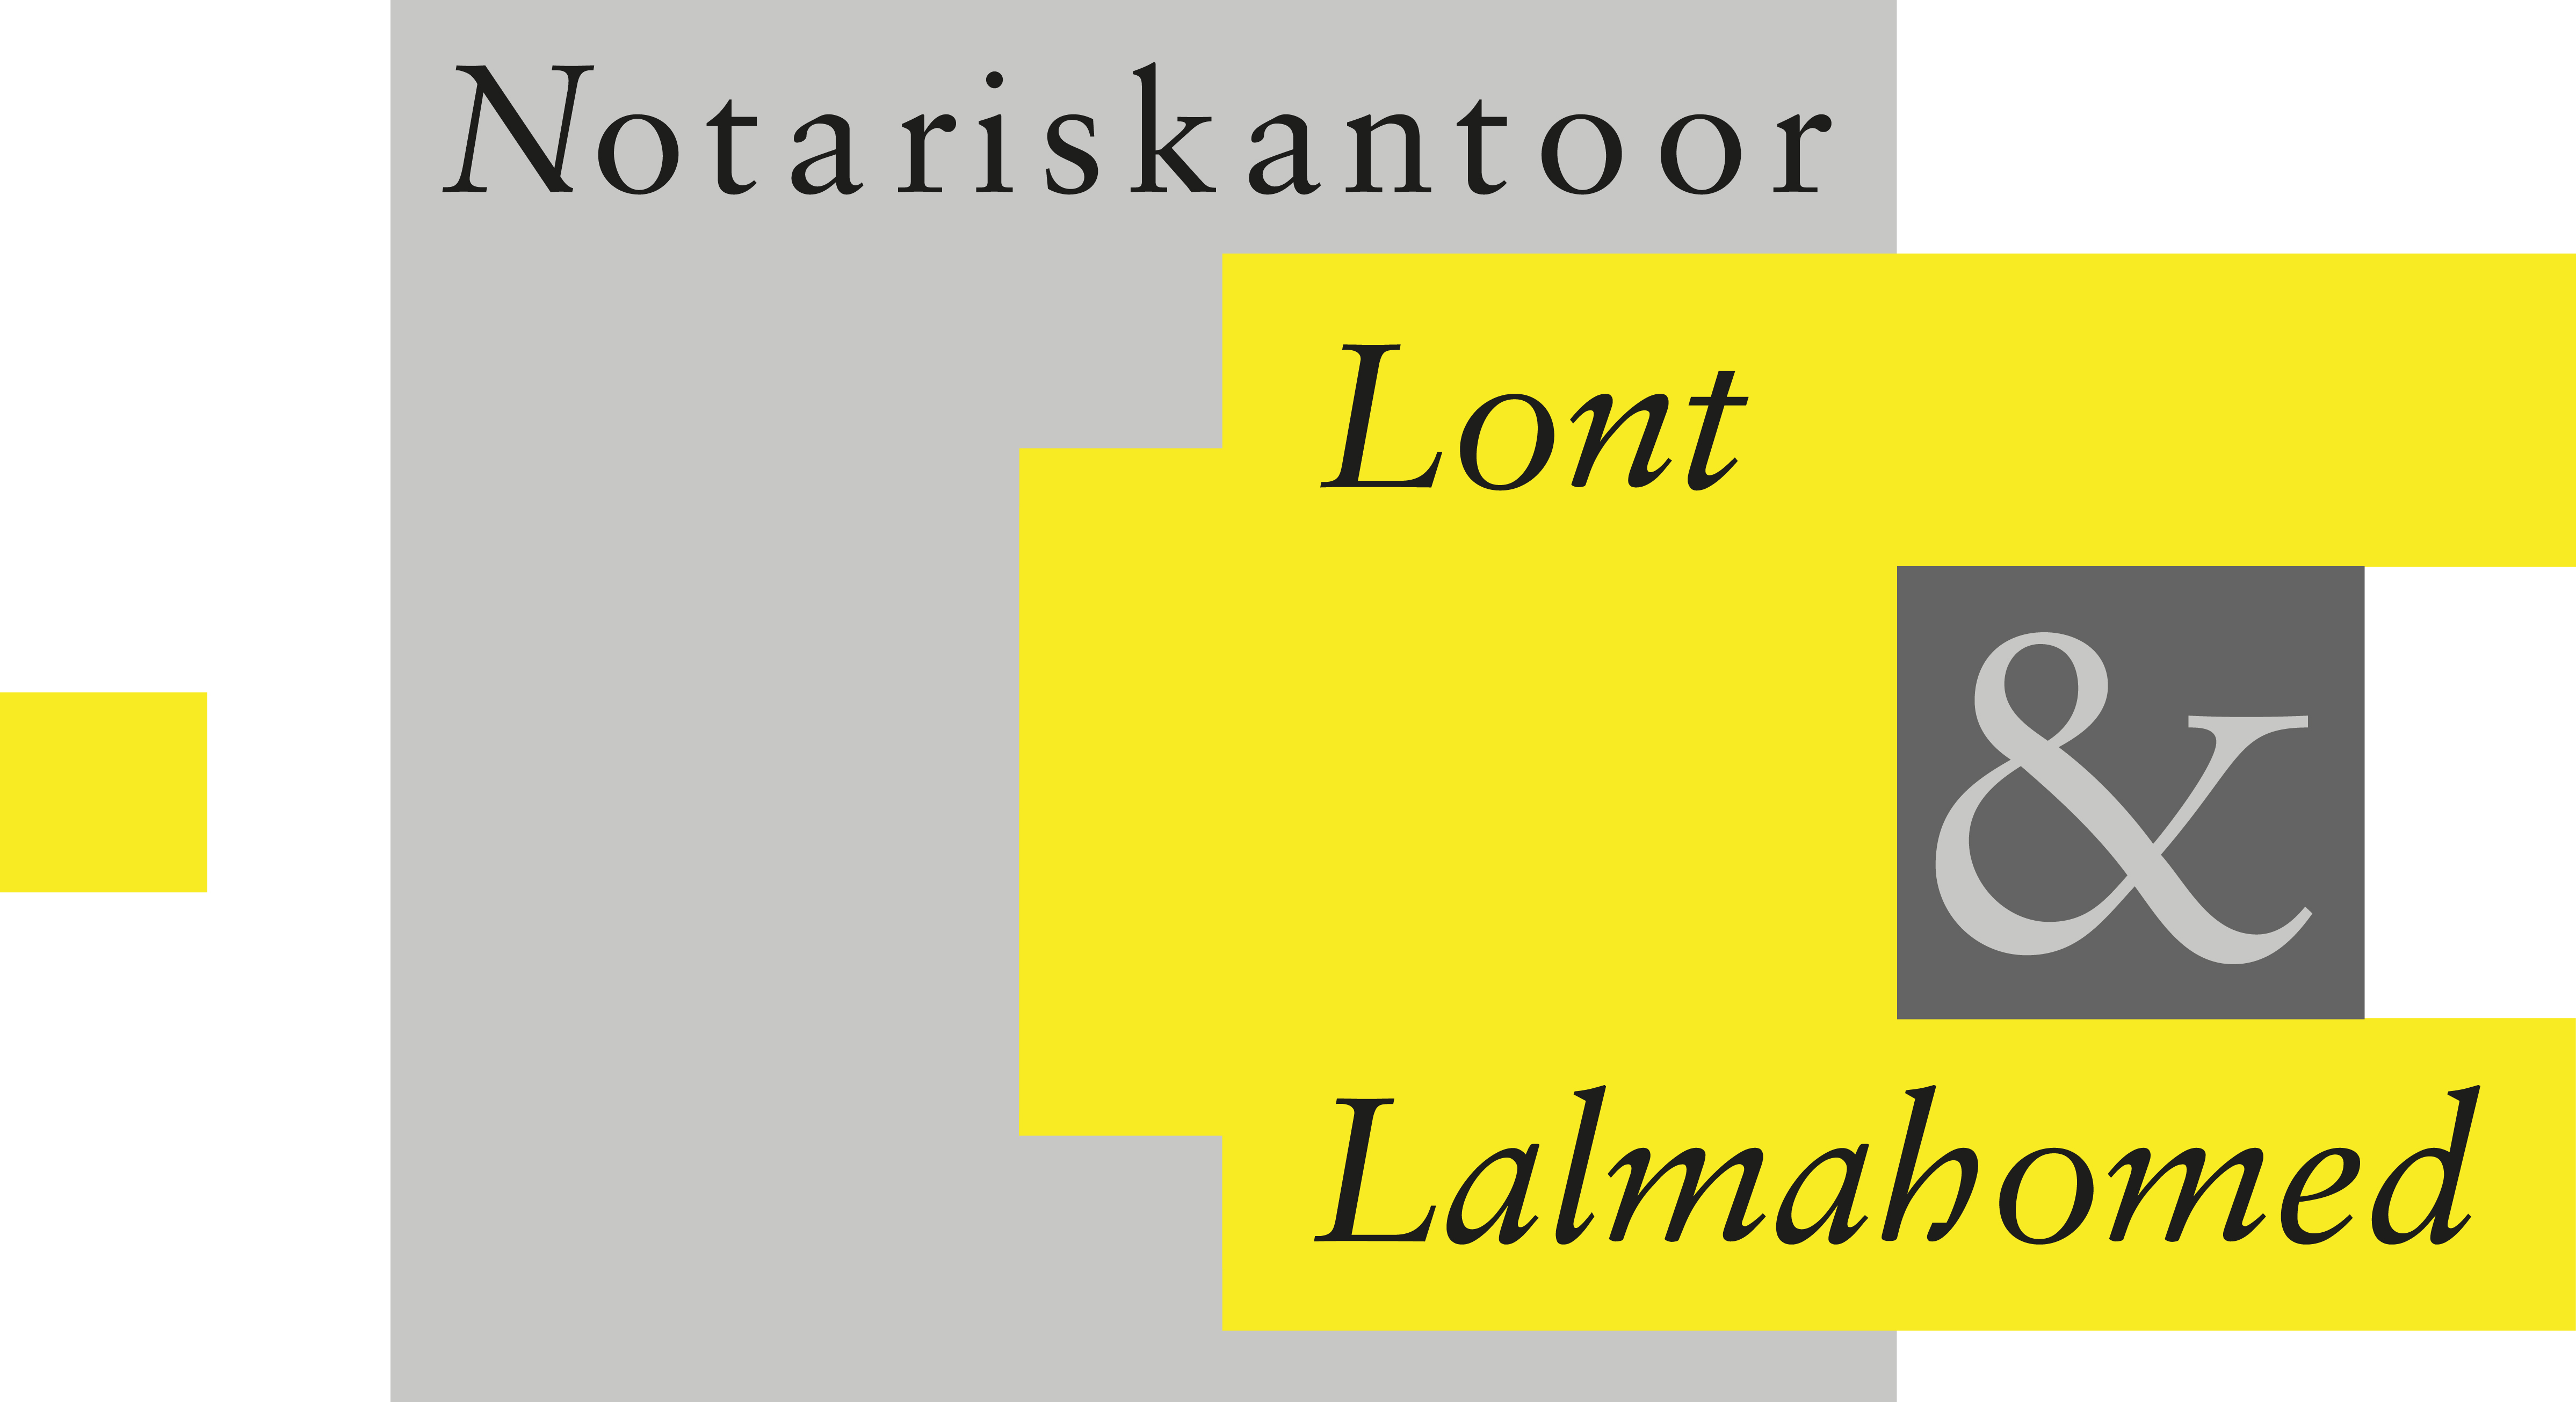 Notariskantoor Lont & Lalmahomed